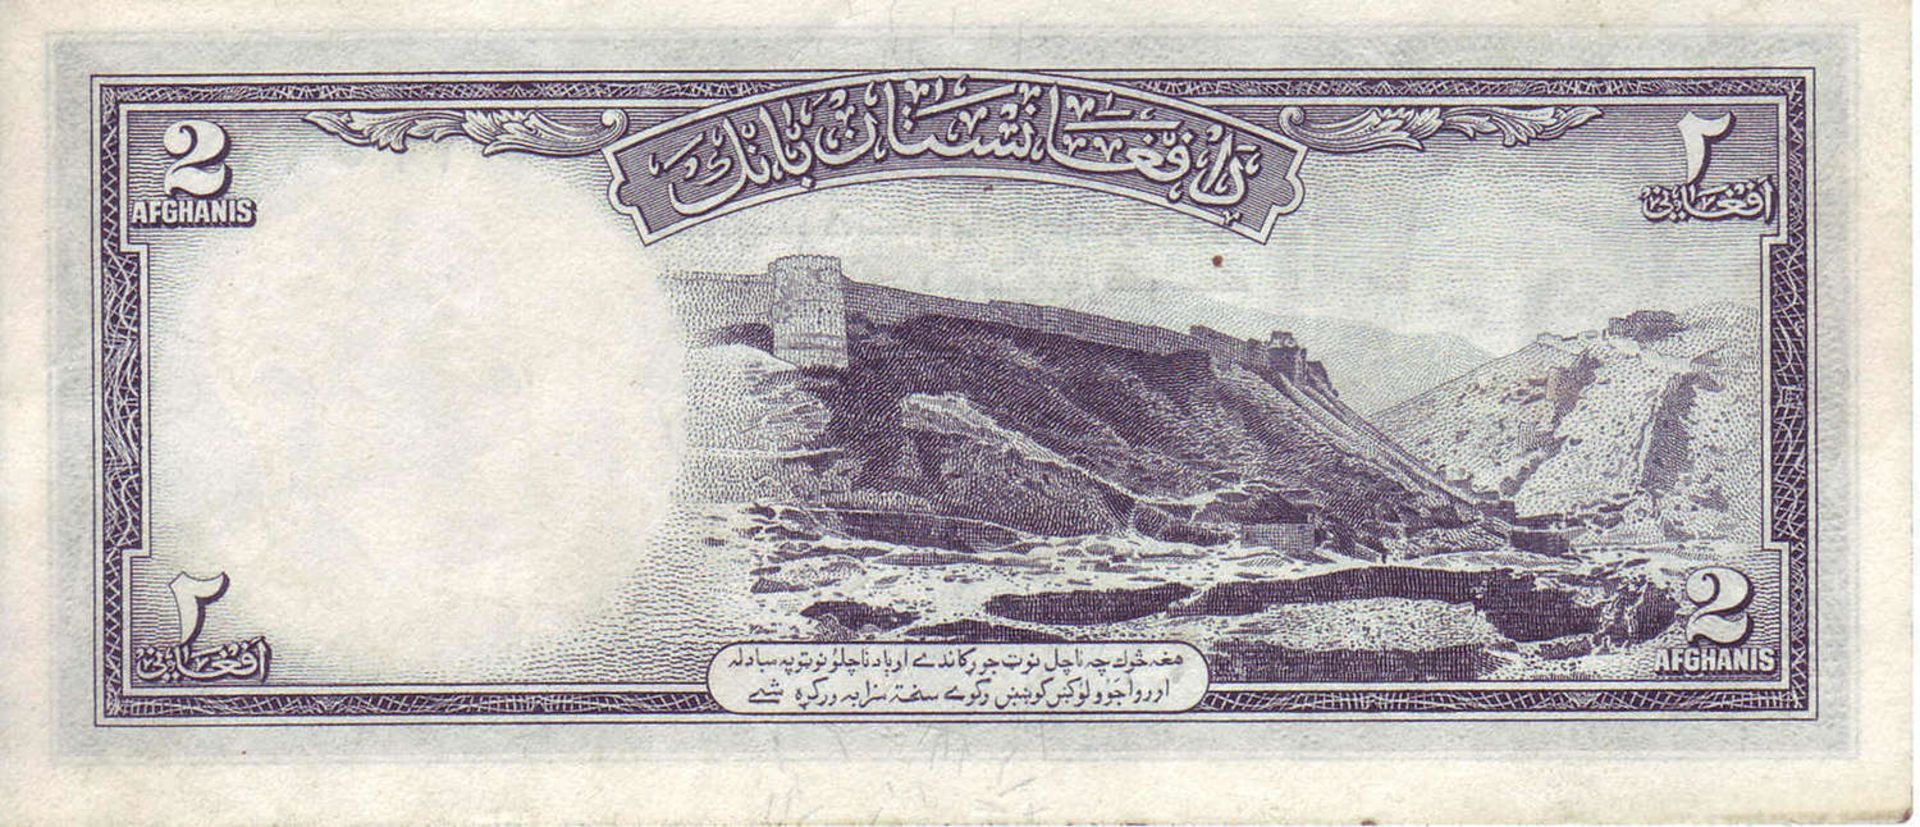 Afghanistan 1948, 2 Afghanis - Banknote, 2. Serie. P 28. SS.Afghanistan 1948, 2 Afghanis - Banknote, - Bild 2 aus 2